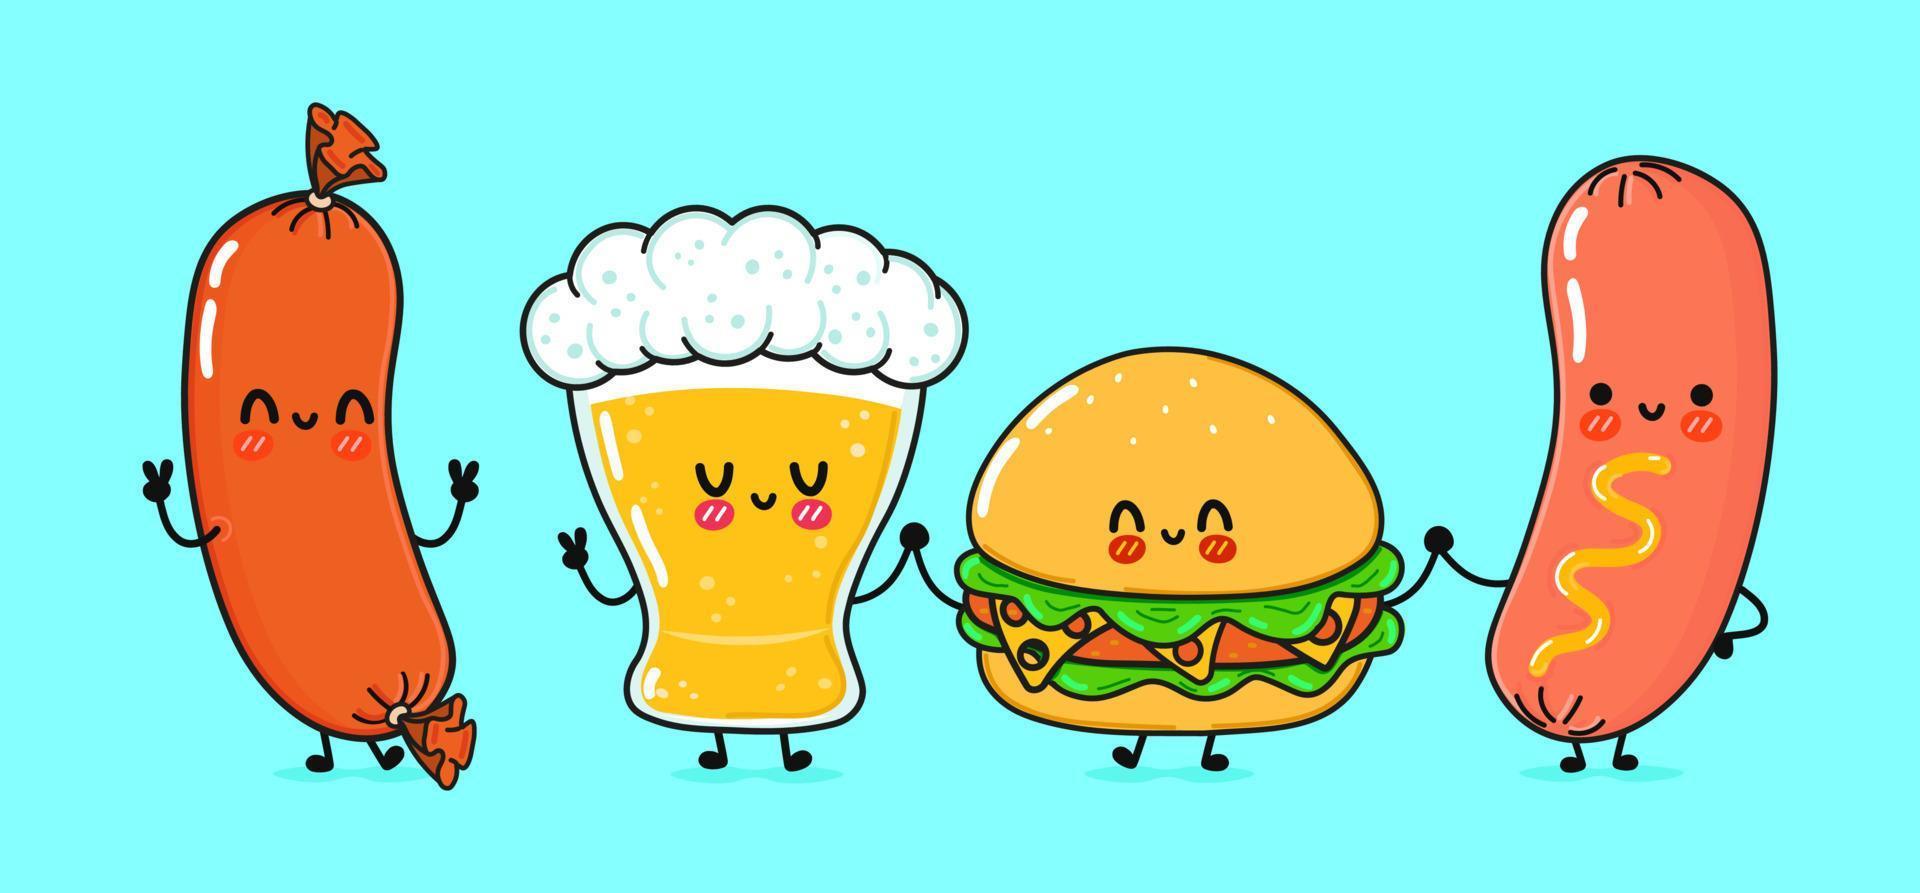 carino, divertente bicchiere di birra, salsiccia con senape e hamburger. personaggi kawaii del fumetto disegnato a mano di vettore, icona dell'illustrazione. divertente cartone animato bicchiere di birra, salsiccia senape e mascotte hamburger vettore